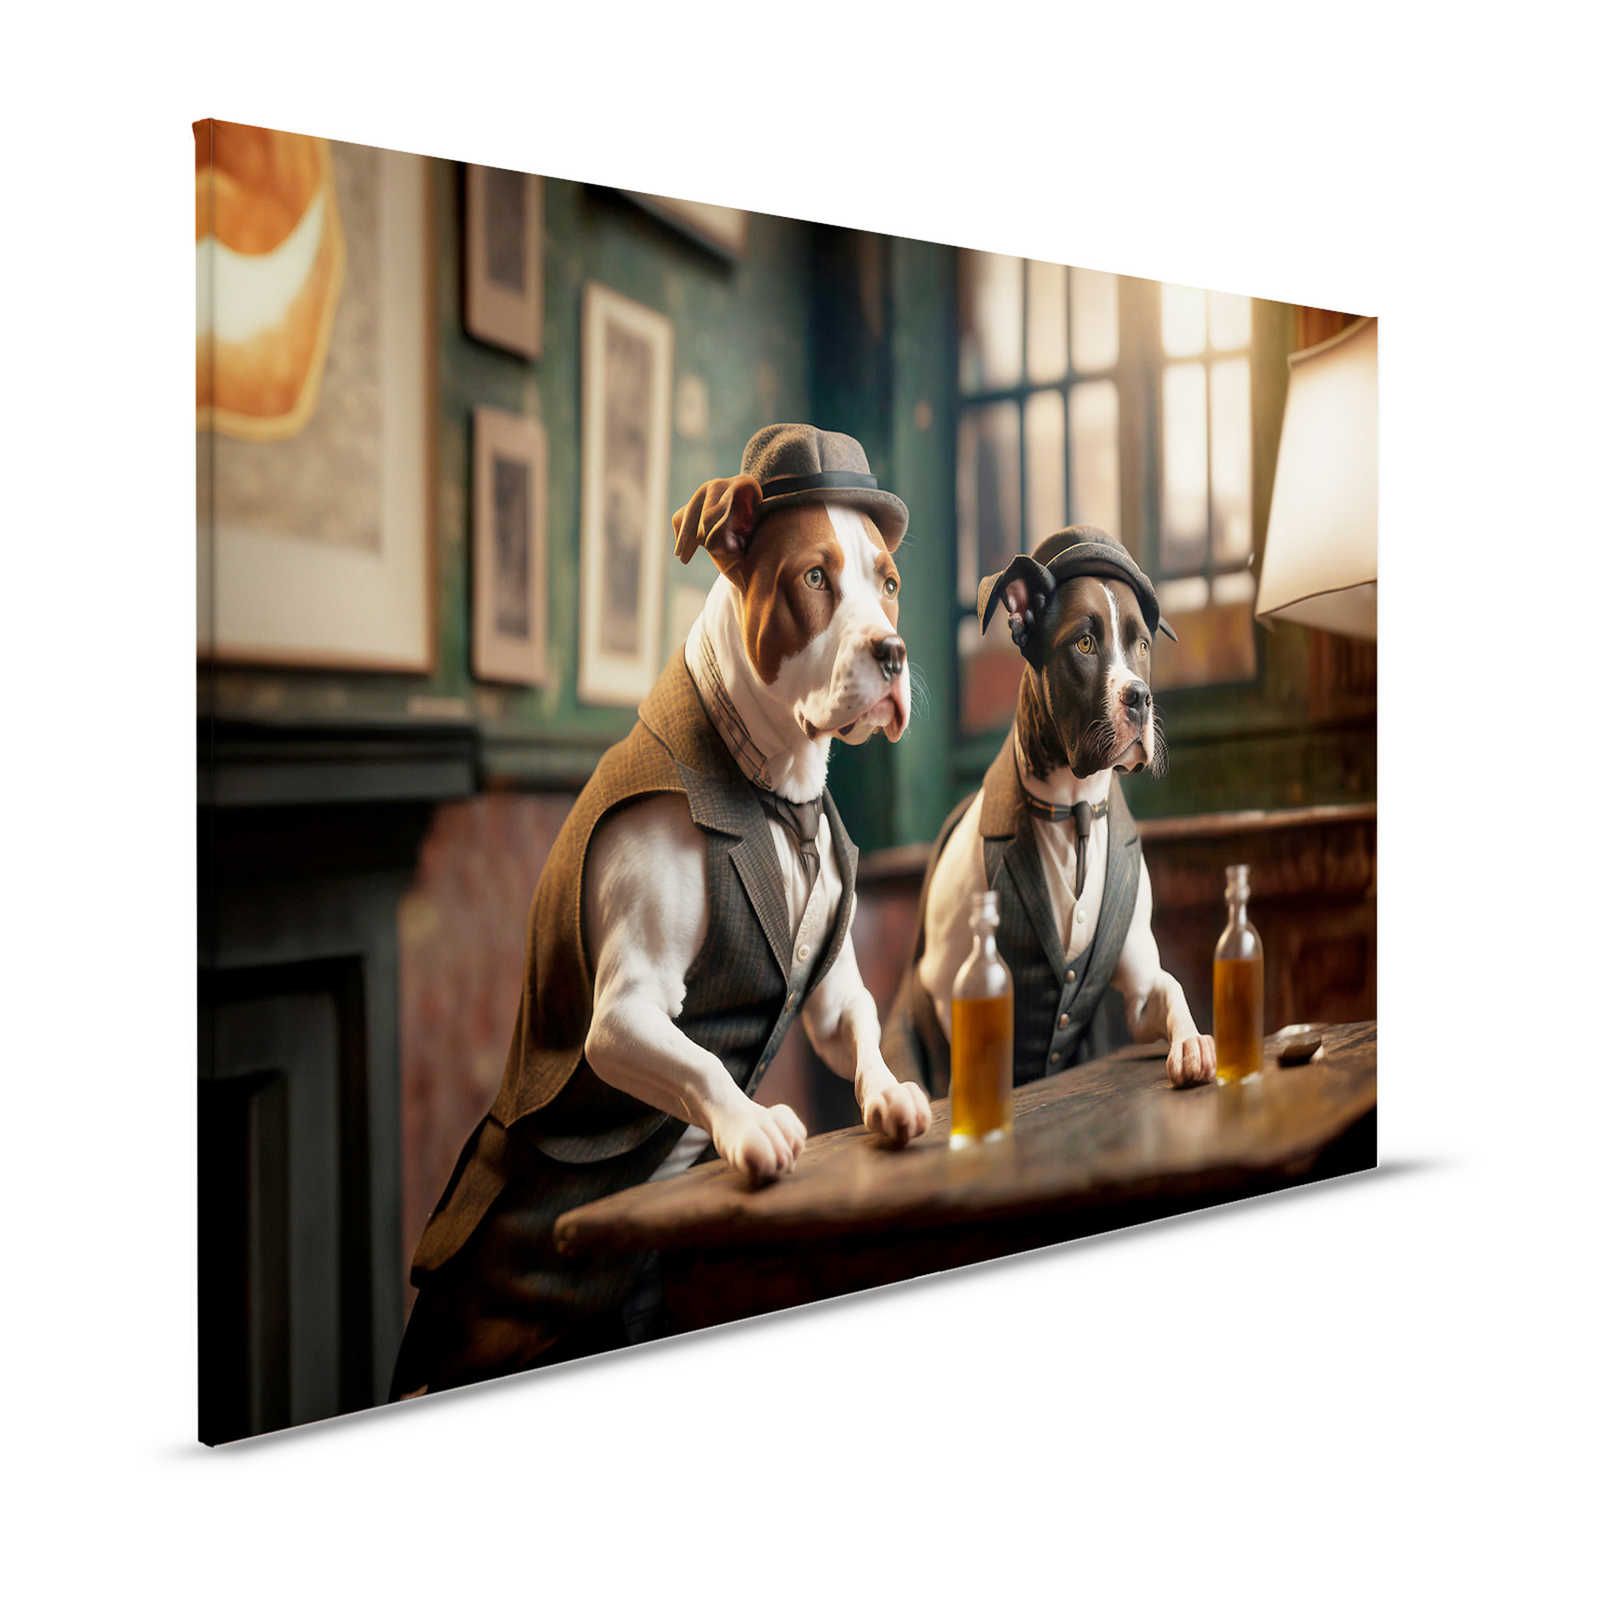 KI Canvas schilderij »Doggy Bar 2« - 120 cm x 80 cm
